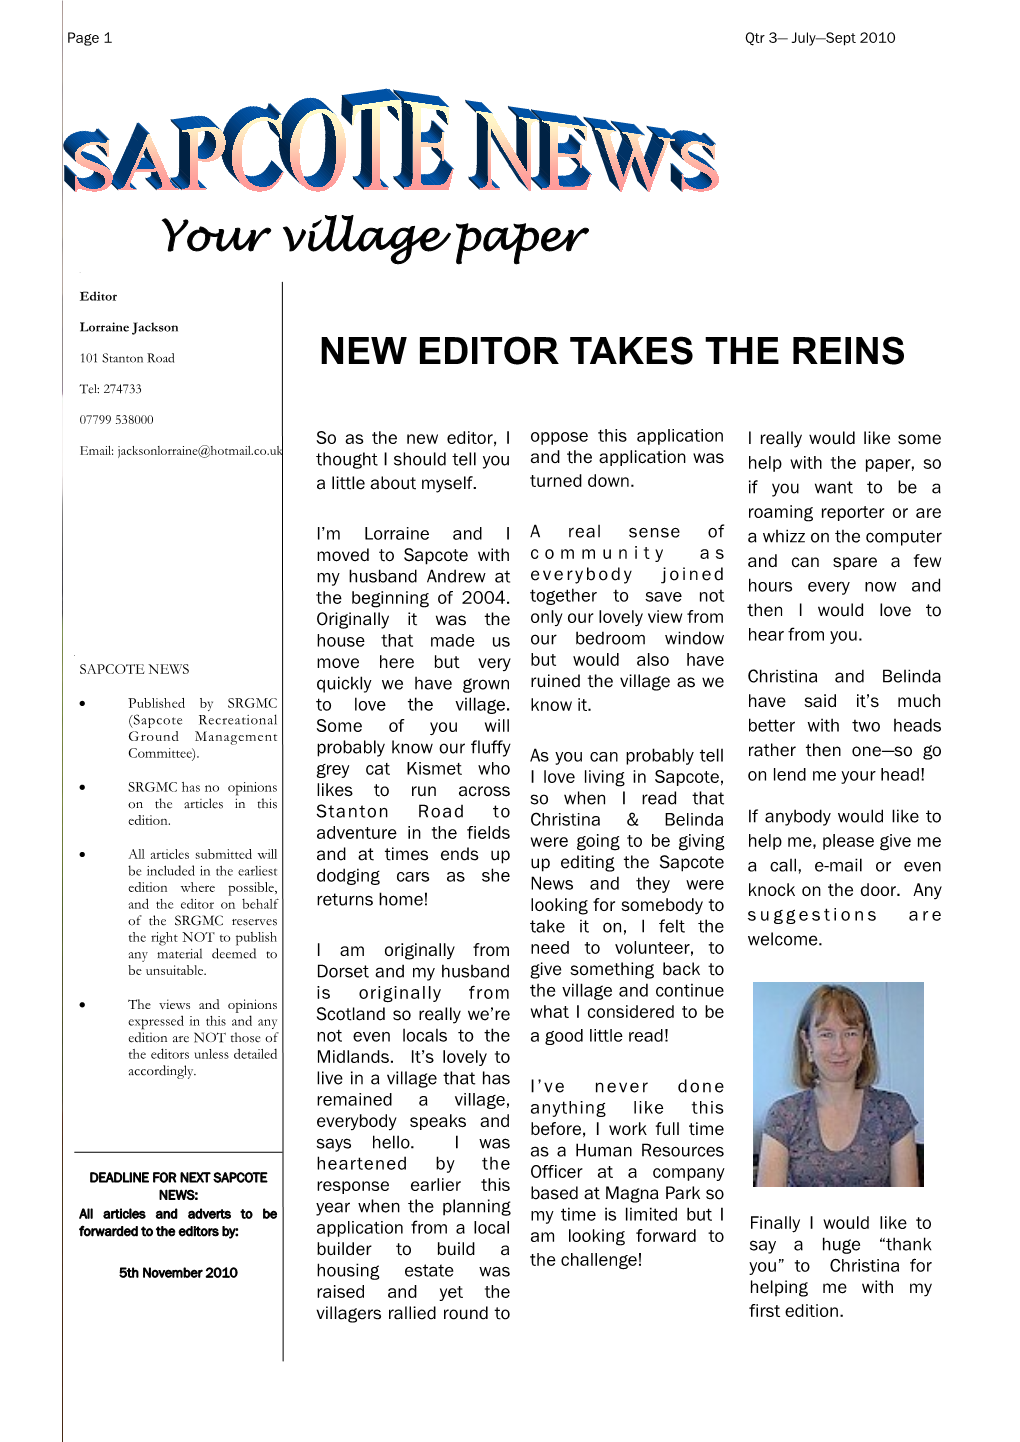 Your Village Paper